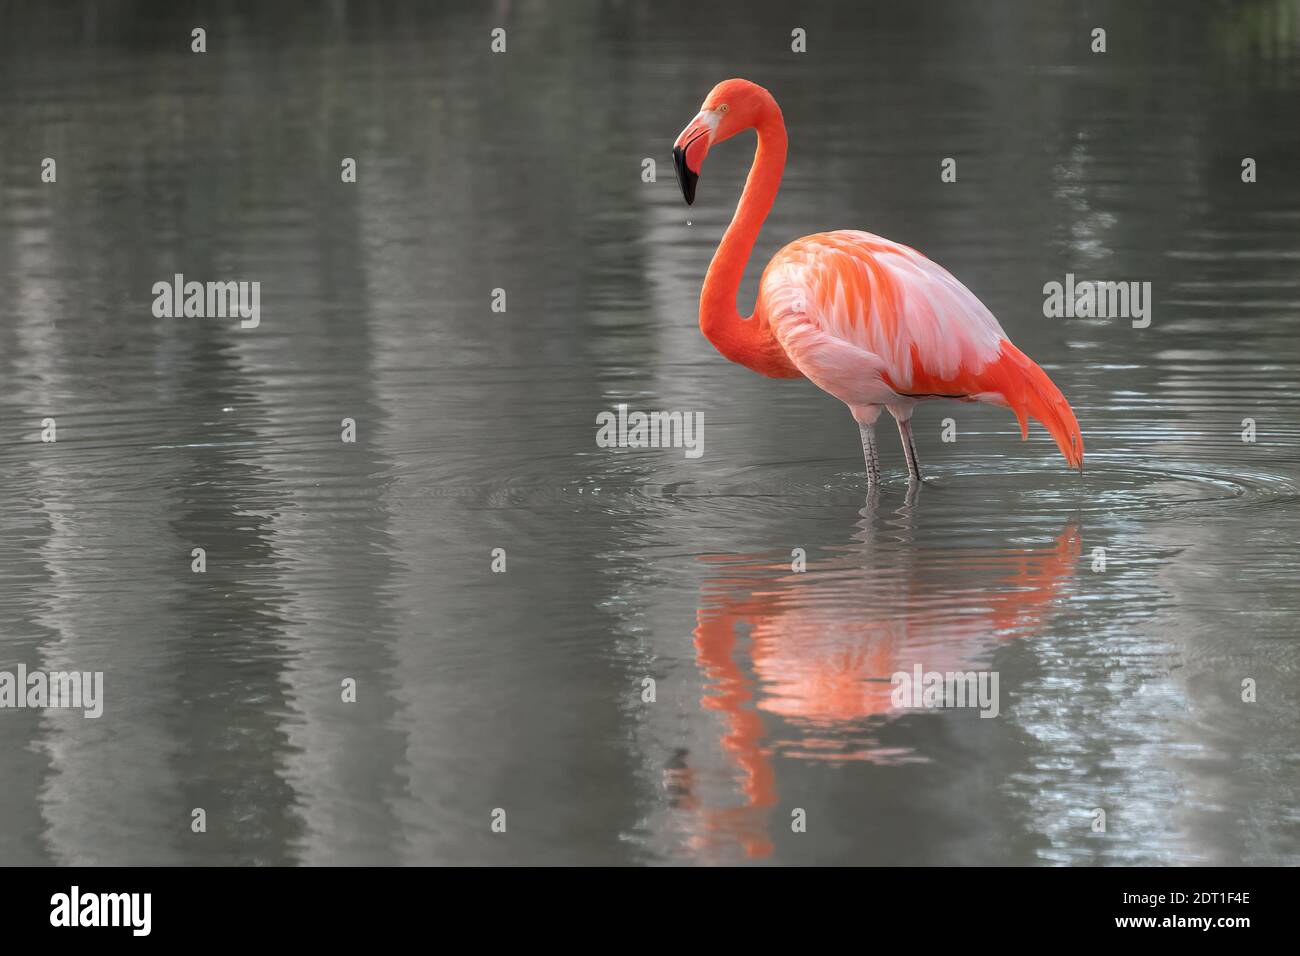 Flamingo oiseau dans l'eau Banque D'Images